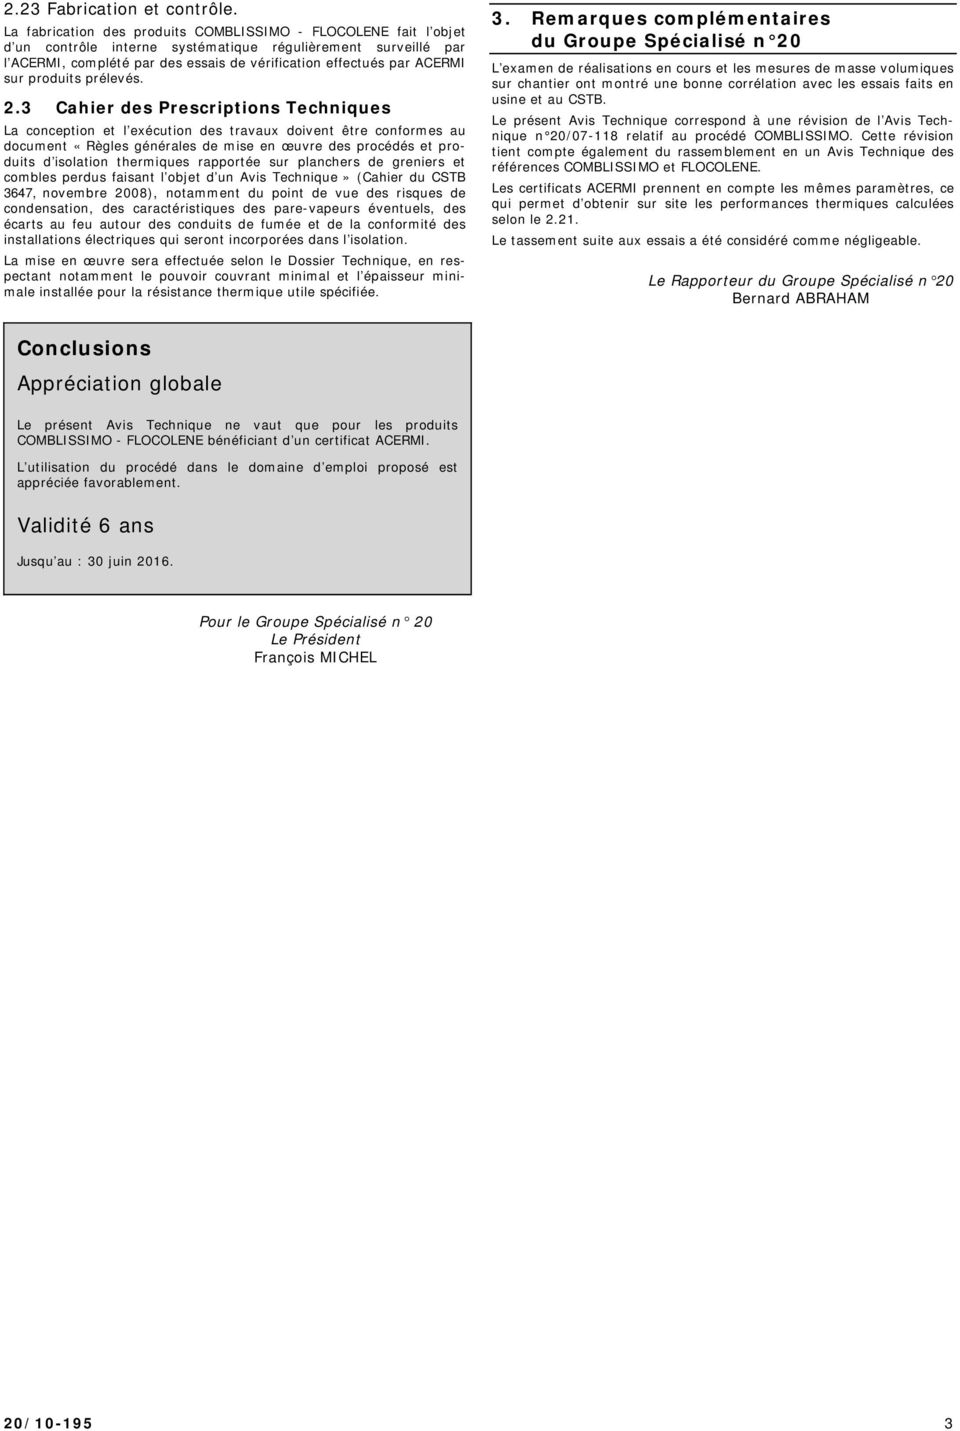 Avis Technique 20/ COMBLISSIMO - FLOCOLENE - PDF Free Download